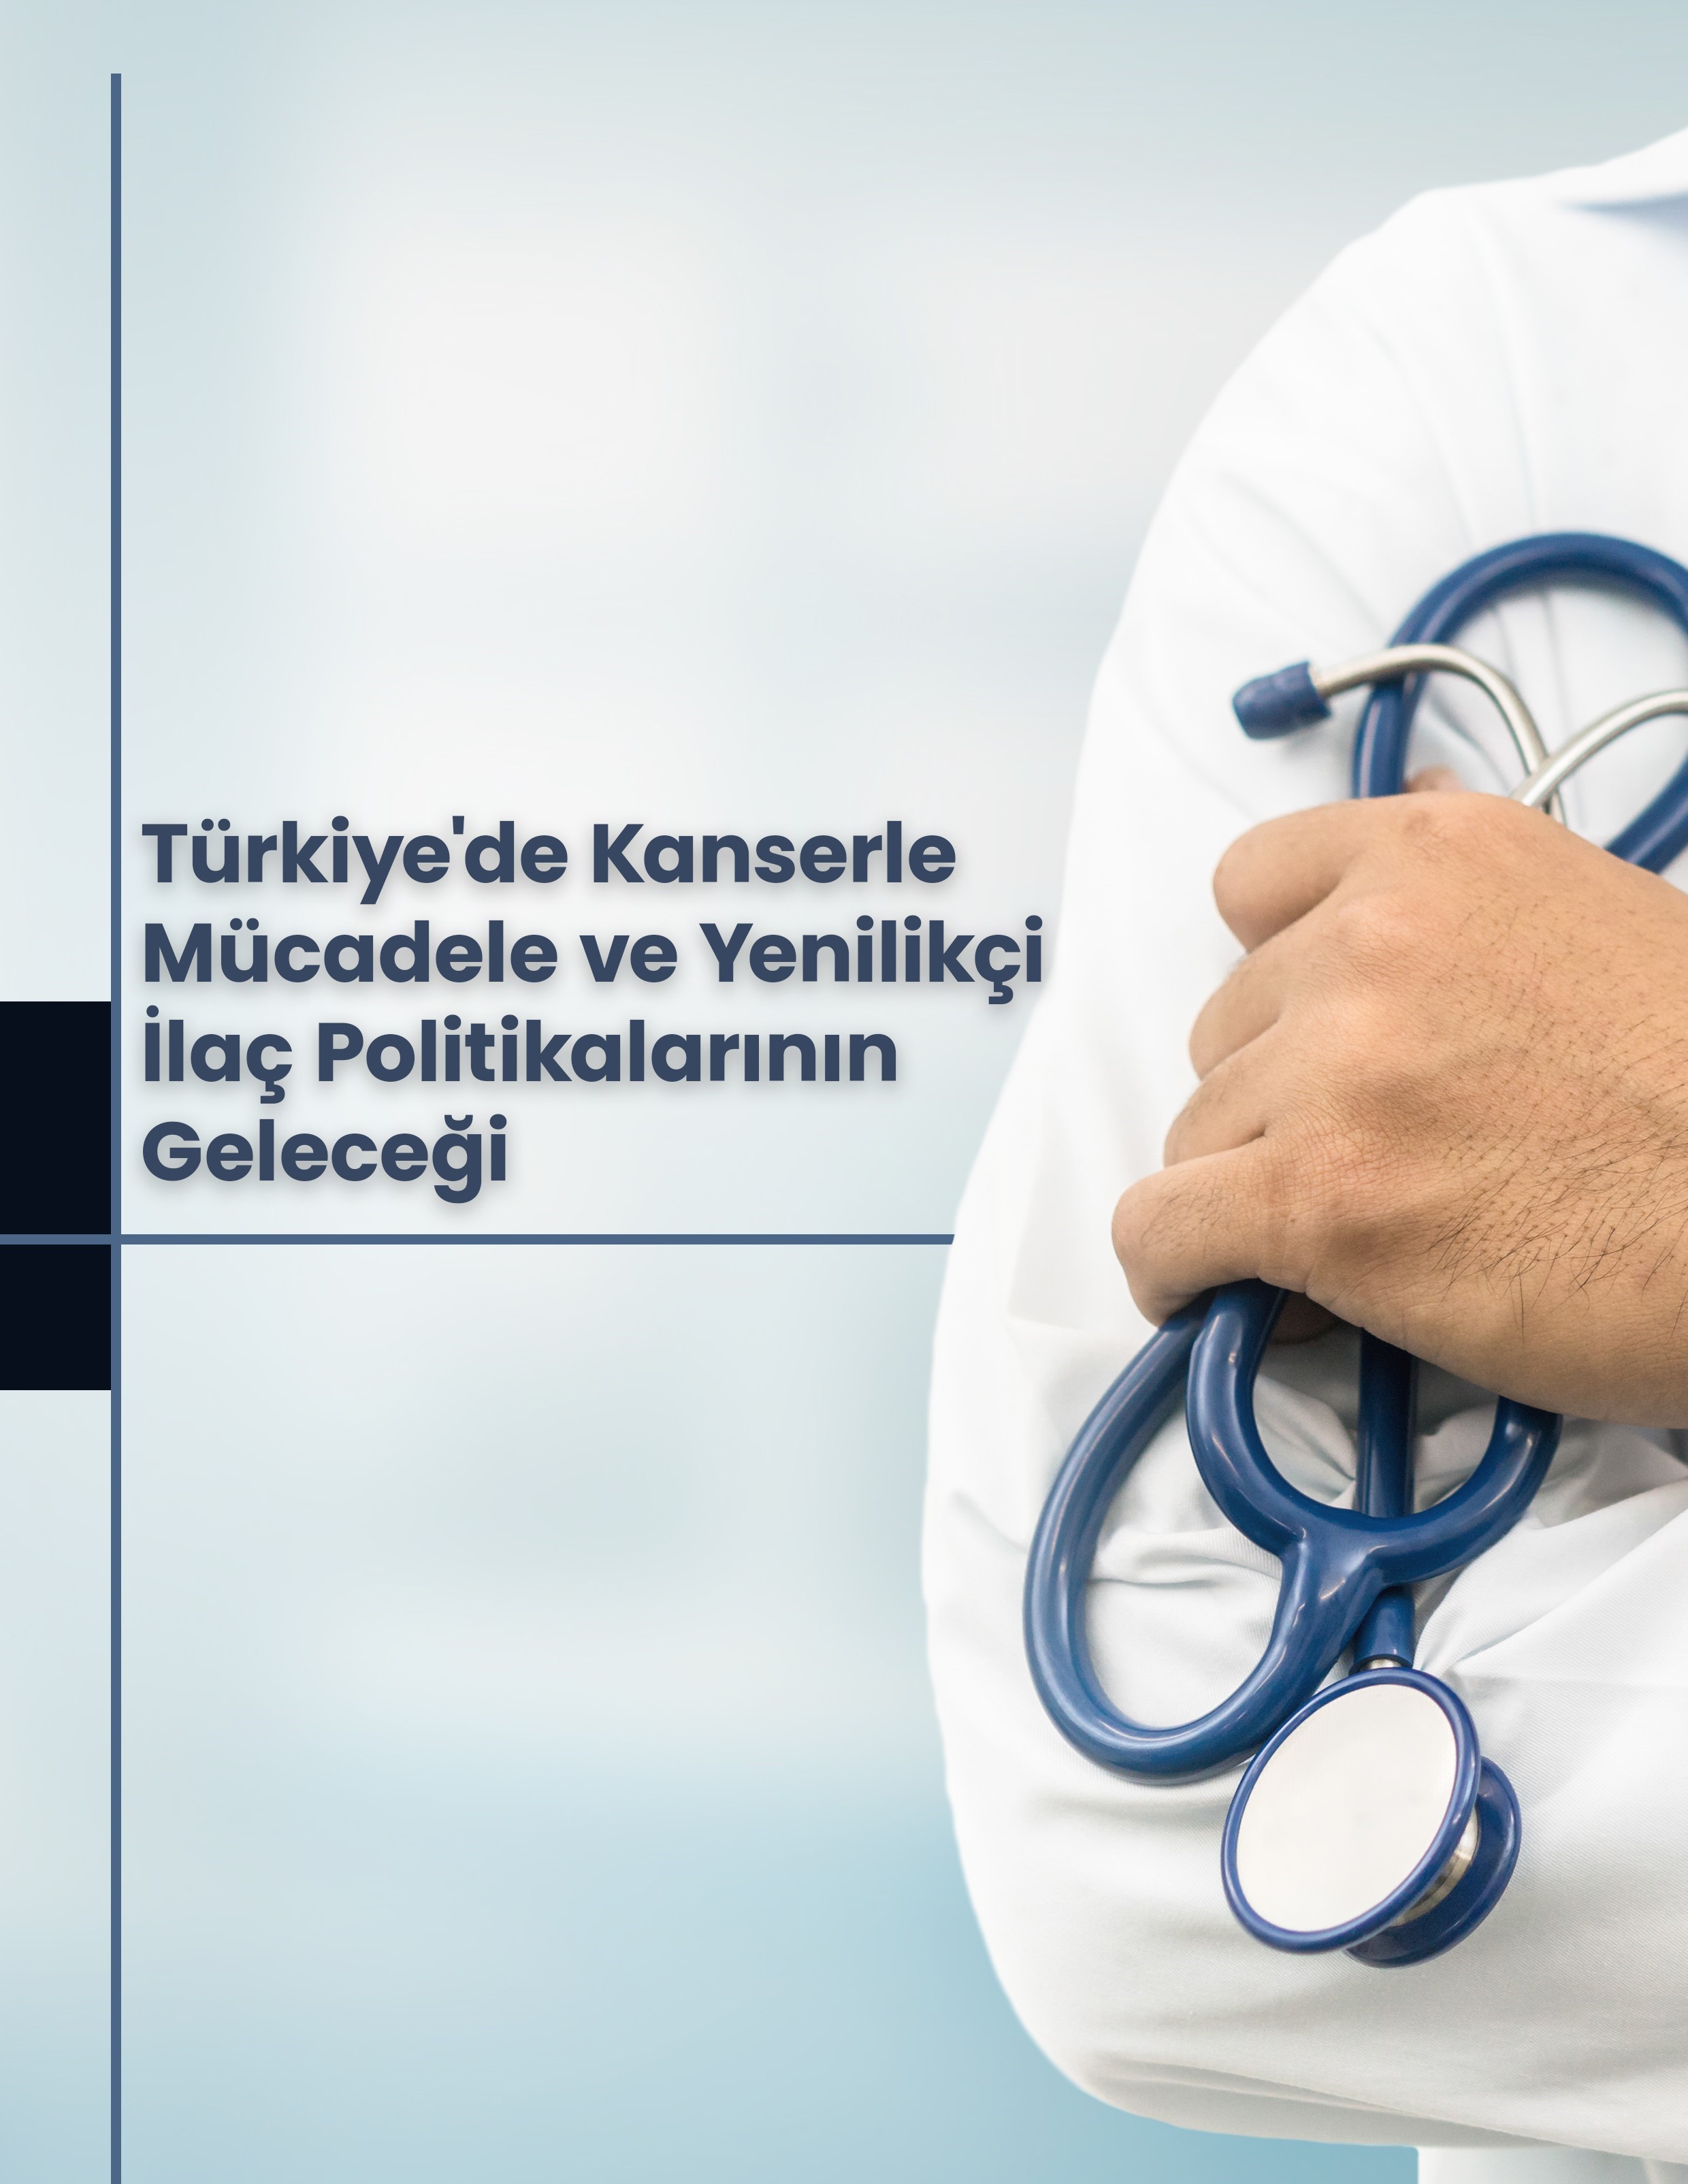 Türkiye’de Kanserle Mücadele ve Yenilikçi İlaç Politikalarının Geleceği